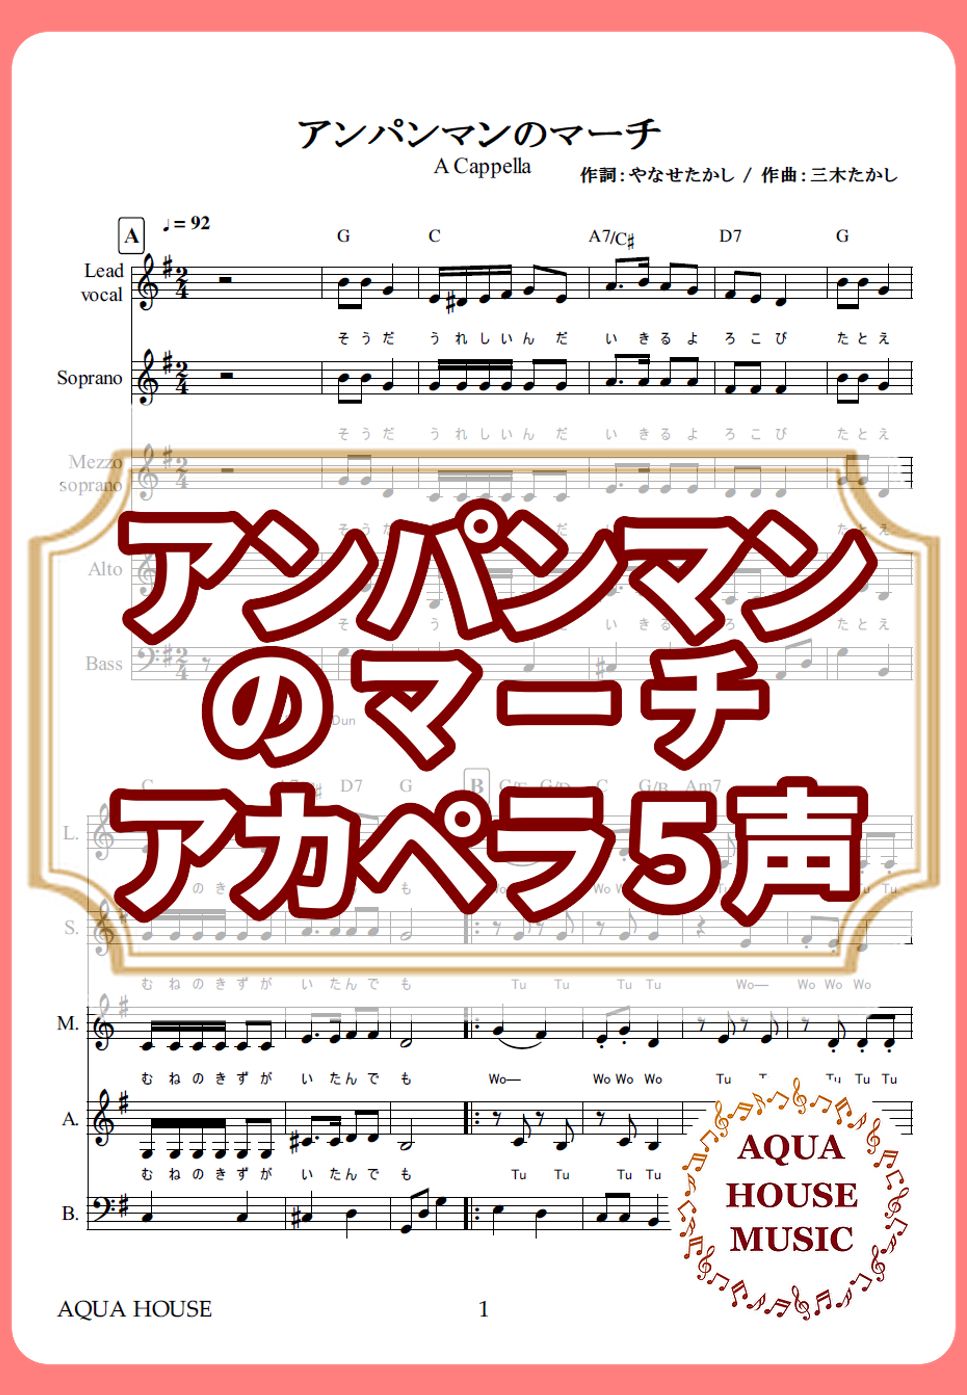 ドリーミング - アンパンマンのマーチ (アカペラ楽譜♪５声ボイパなし) by 飯田 亜紗子